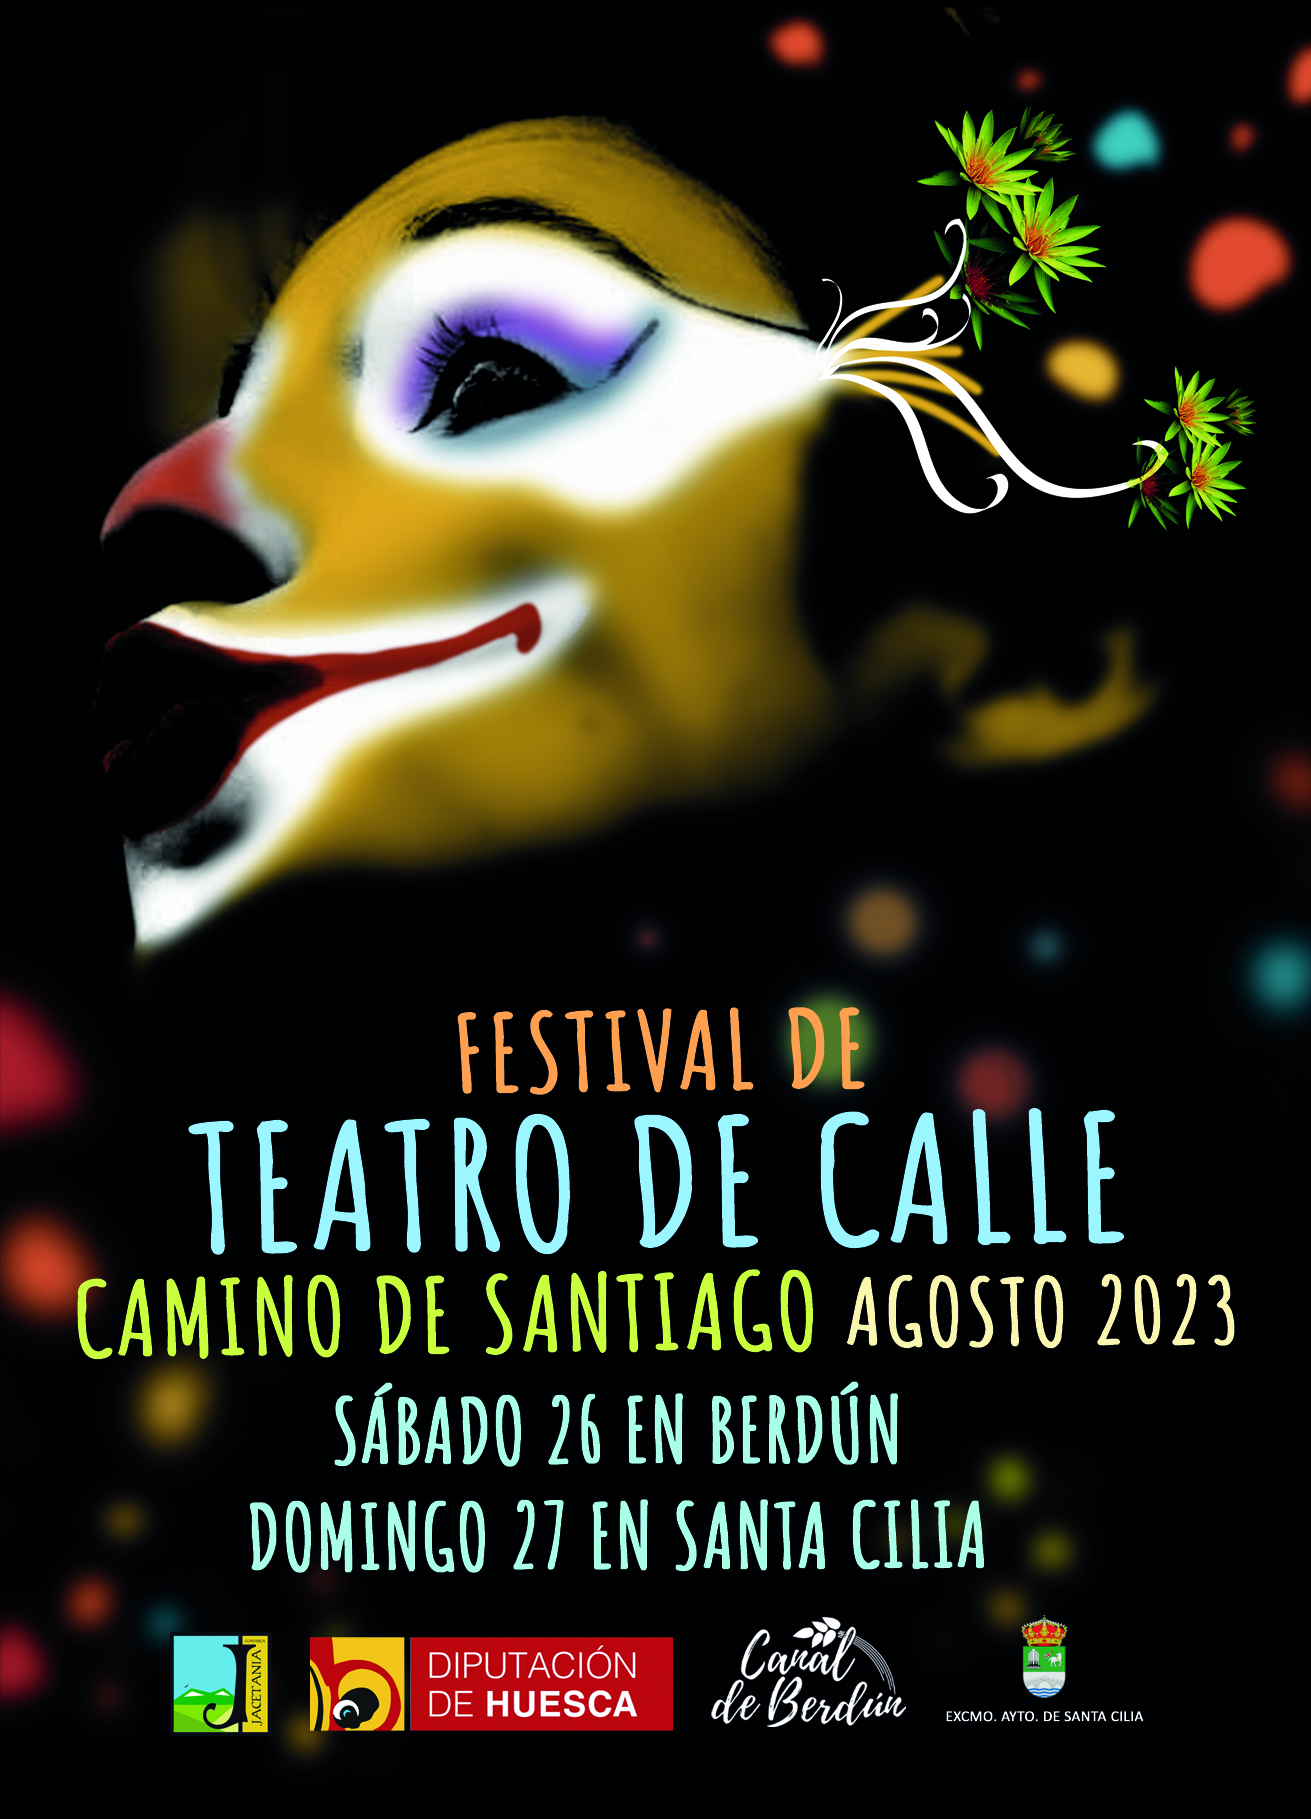 El Festival de Teatro de Calle Camino de Santiago se celebra en Berdn y Santa Cilia